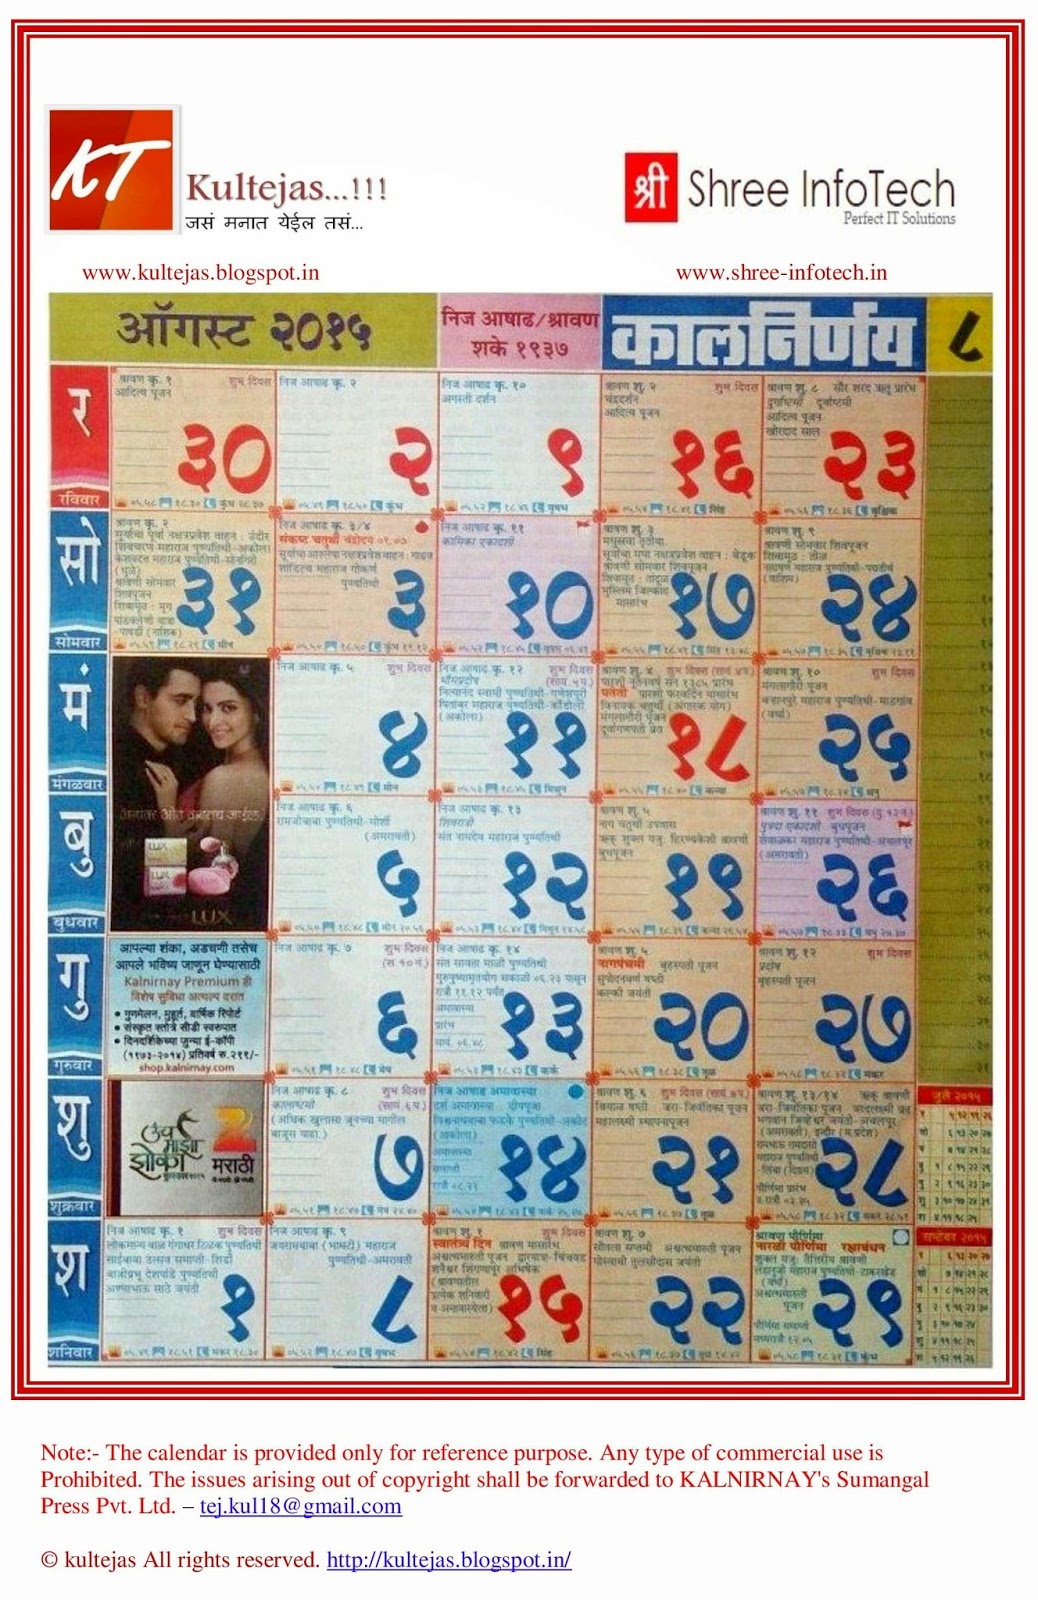 marathi-kalnirnay-calendar-2015-free-download